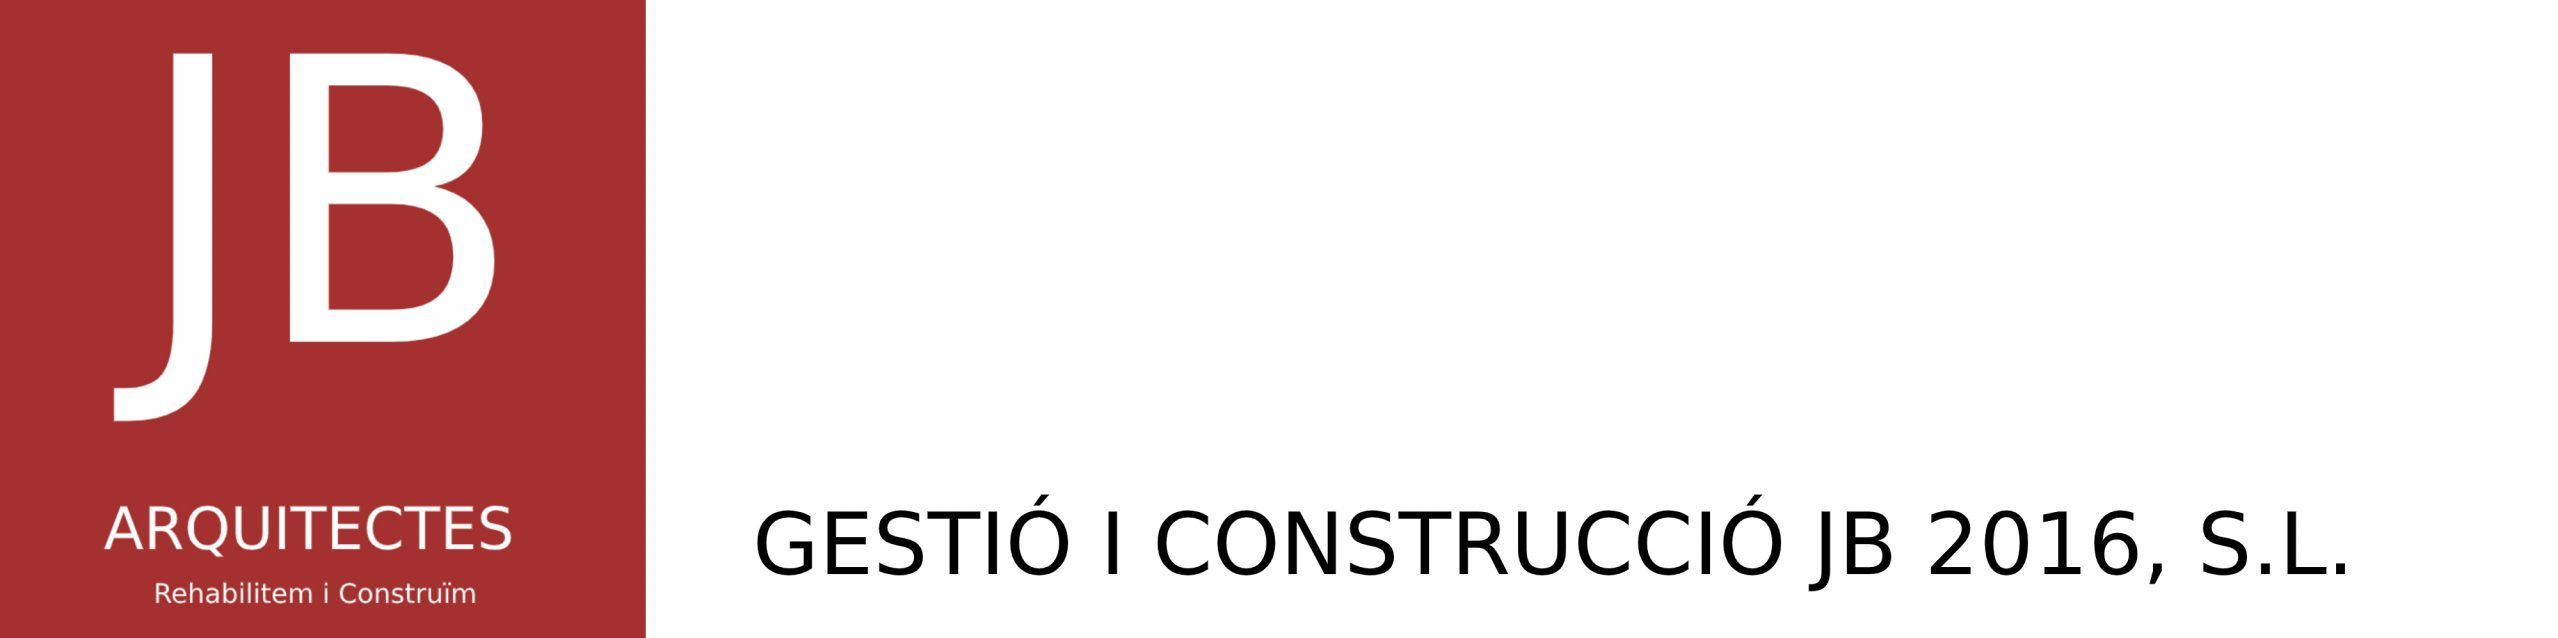 Gestió i Construcció JB 2016